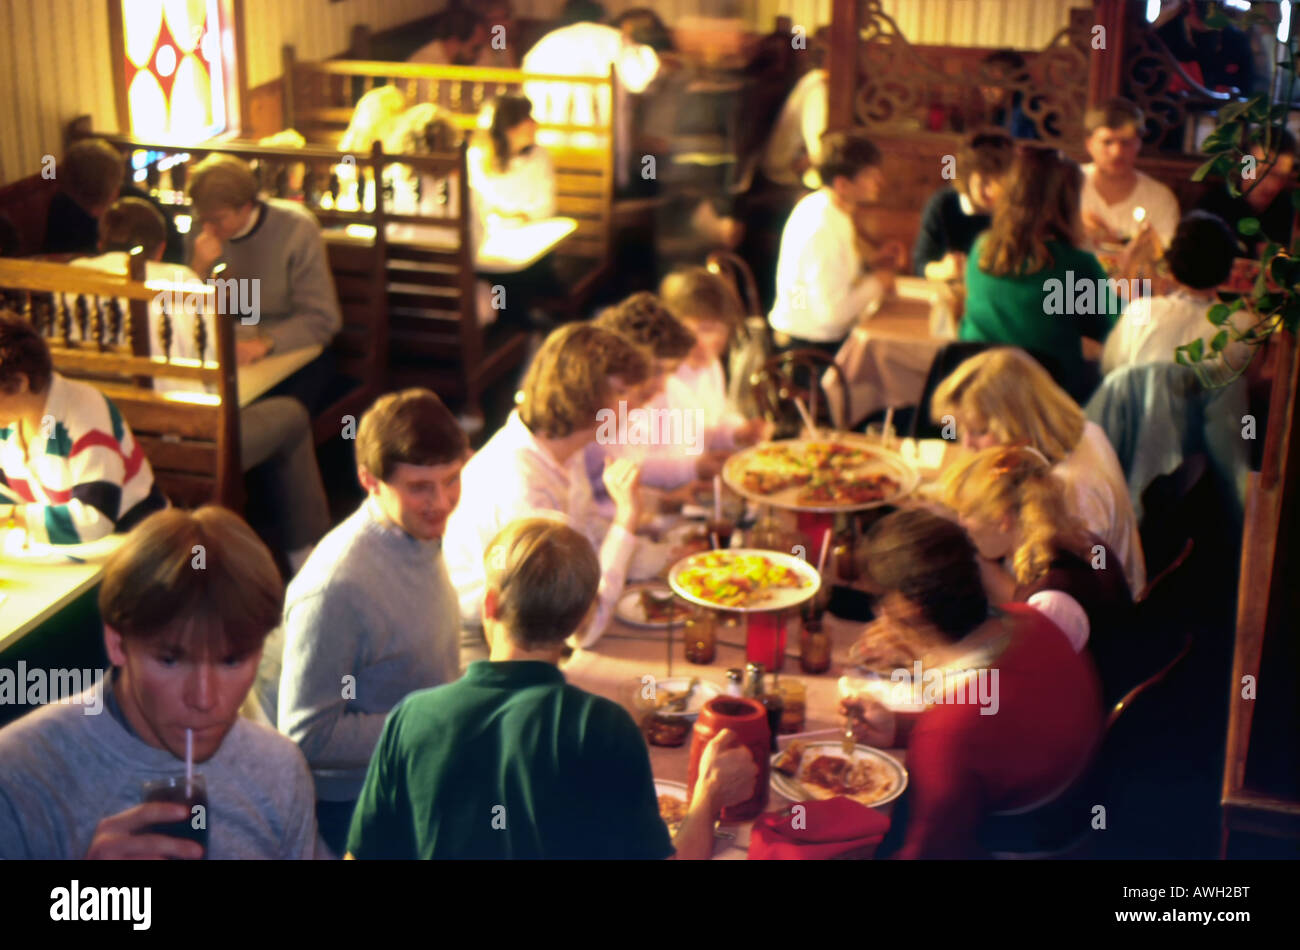 Ein Restaurant-Szene während der Mittagszeit. Eine Langzeitbelichtung zeigt die Bewegung von diese College-Studenten, wie sie Essen & unterhalten. Stockfoto